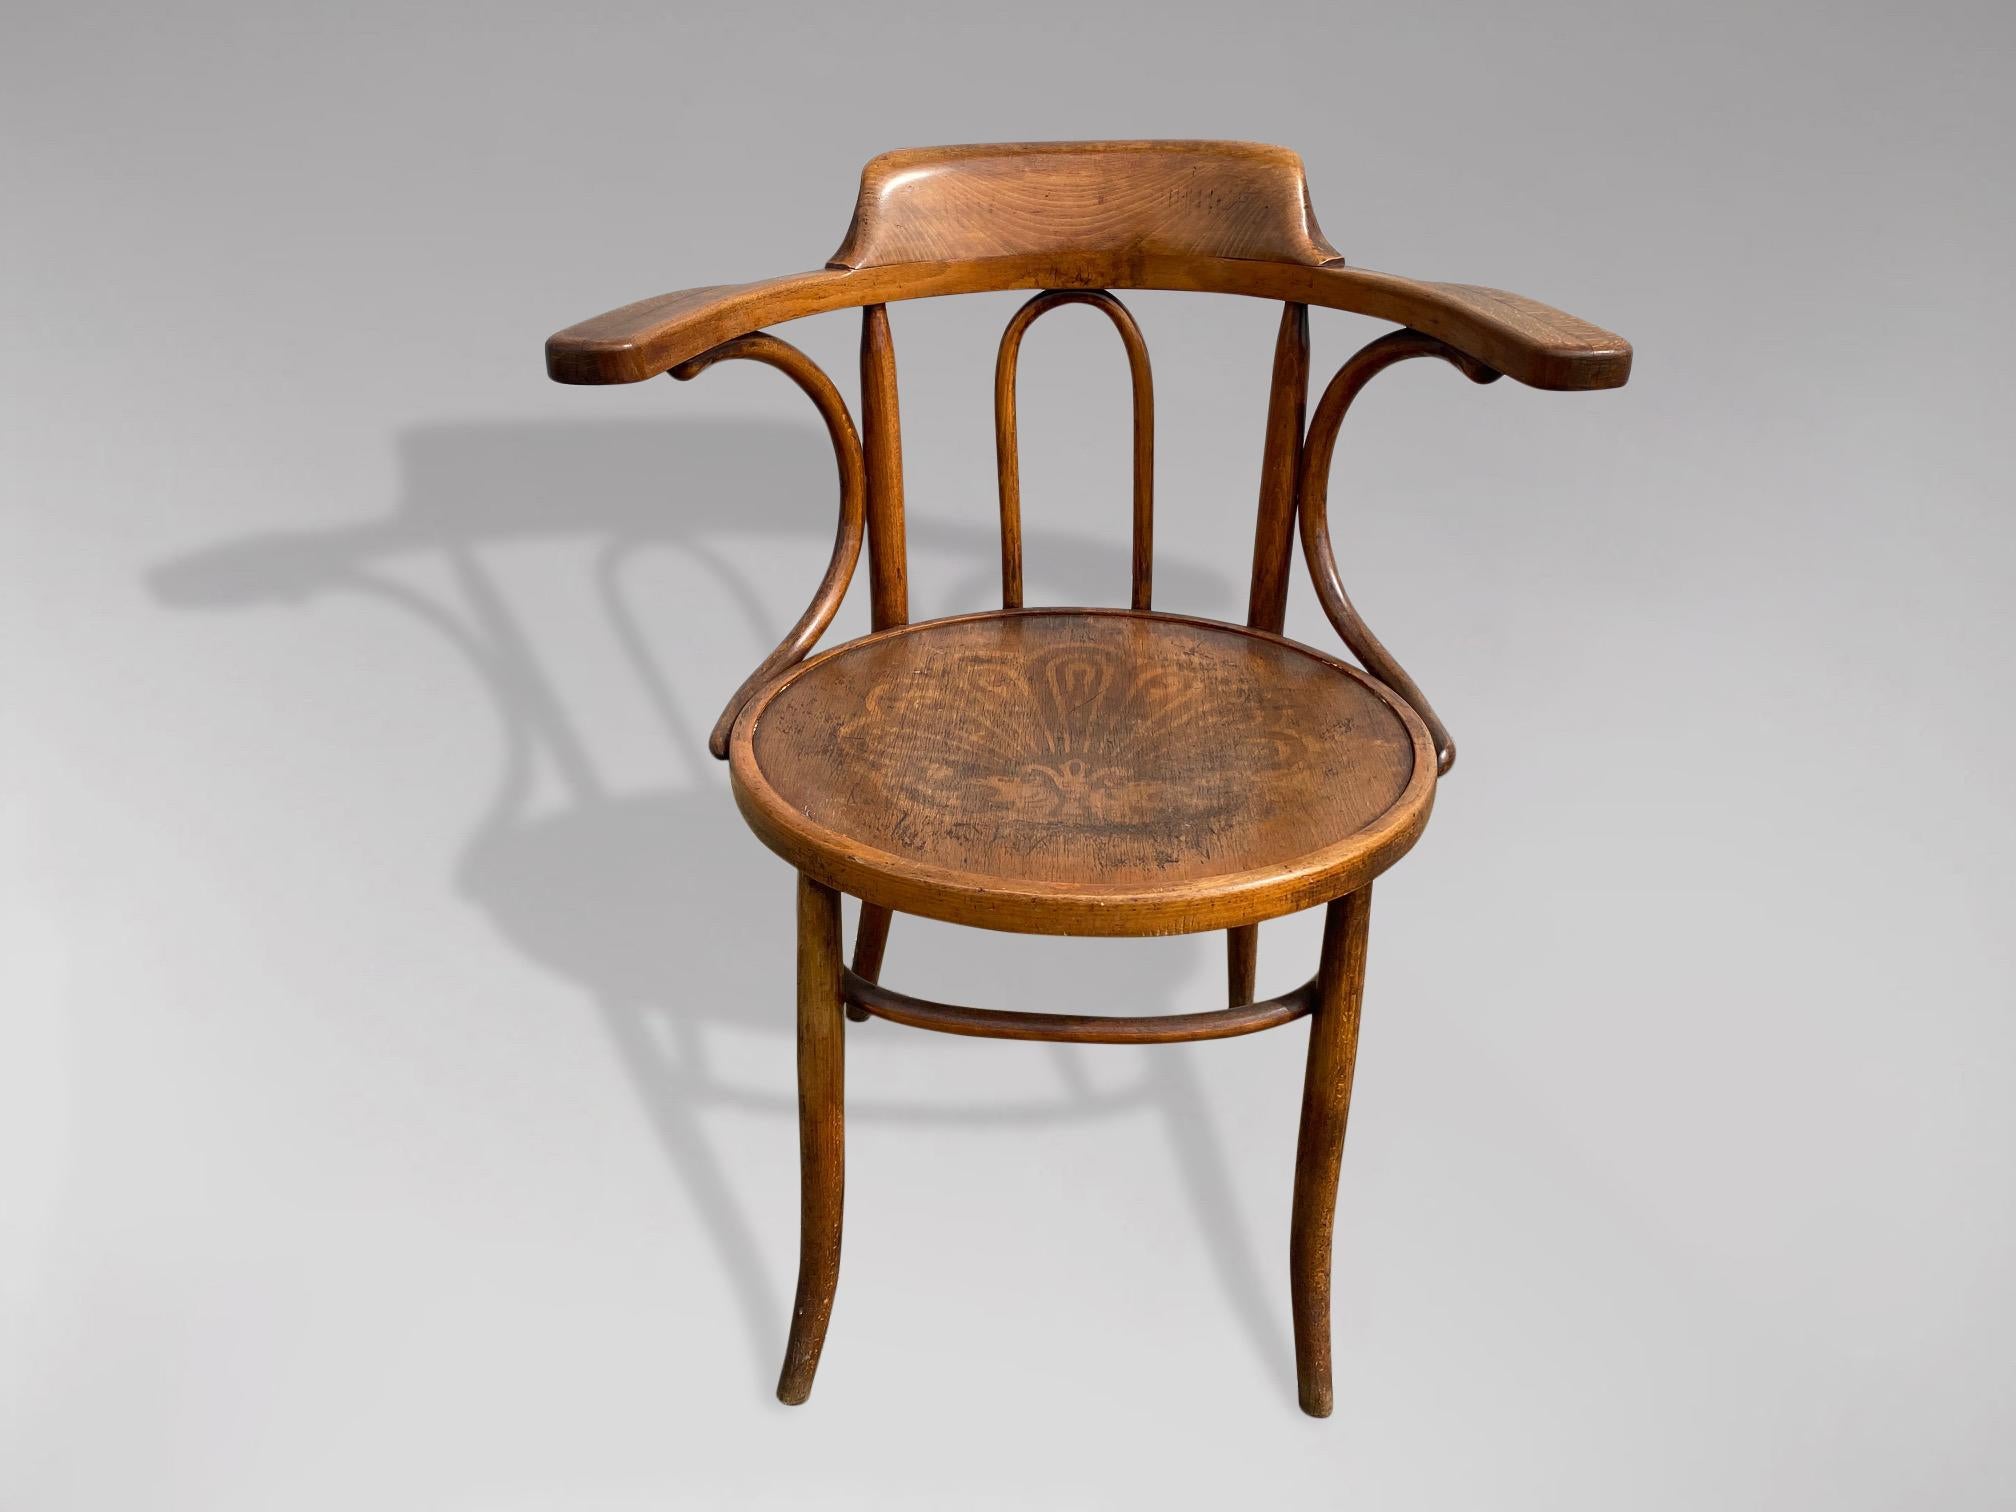 Ein Bugholzsessel des frühen 20. Jahrhunderts in gutem Originalzustand, hergestellt von Thonet in Österreich. Geprägter Sitz mit Rücken- und Armlehnen, gestützt durch geschwungene Streben. Der Sitz ruht auf sanft geschwungenen Beinen, die durch eine